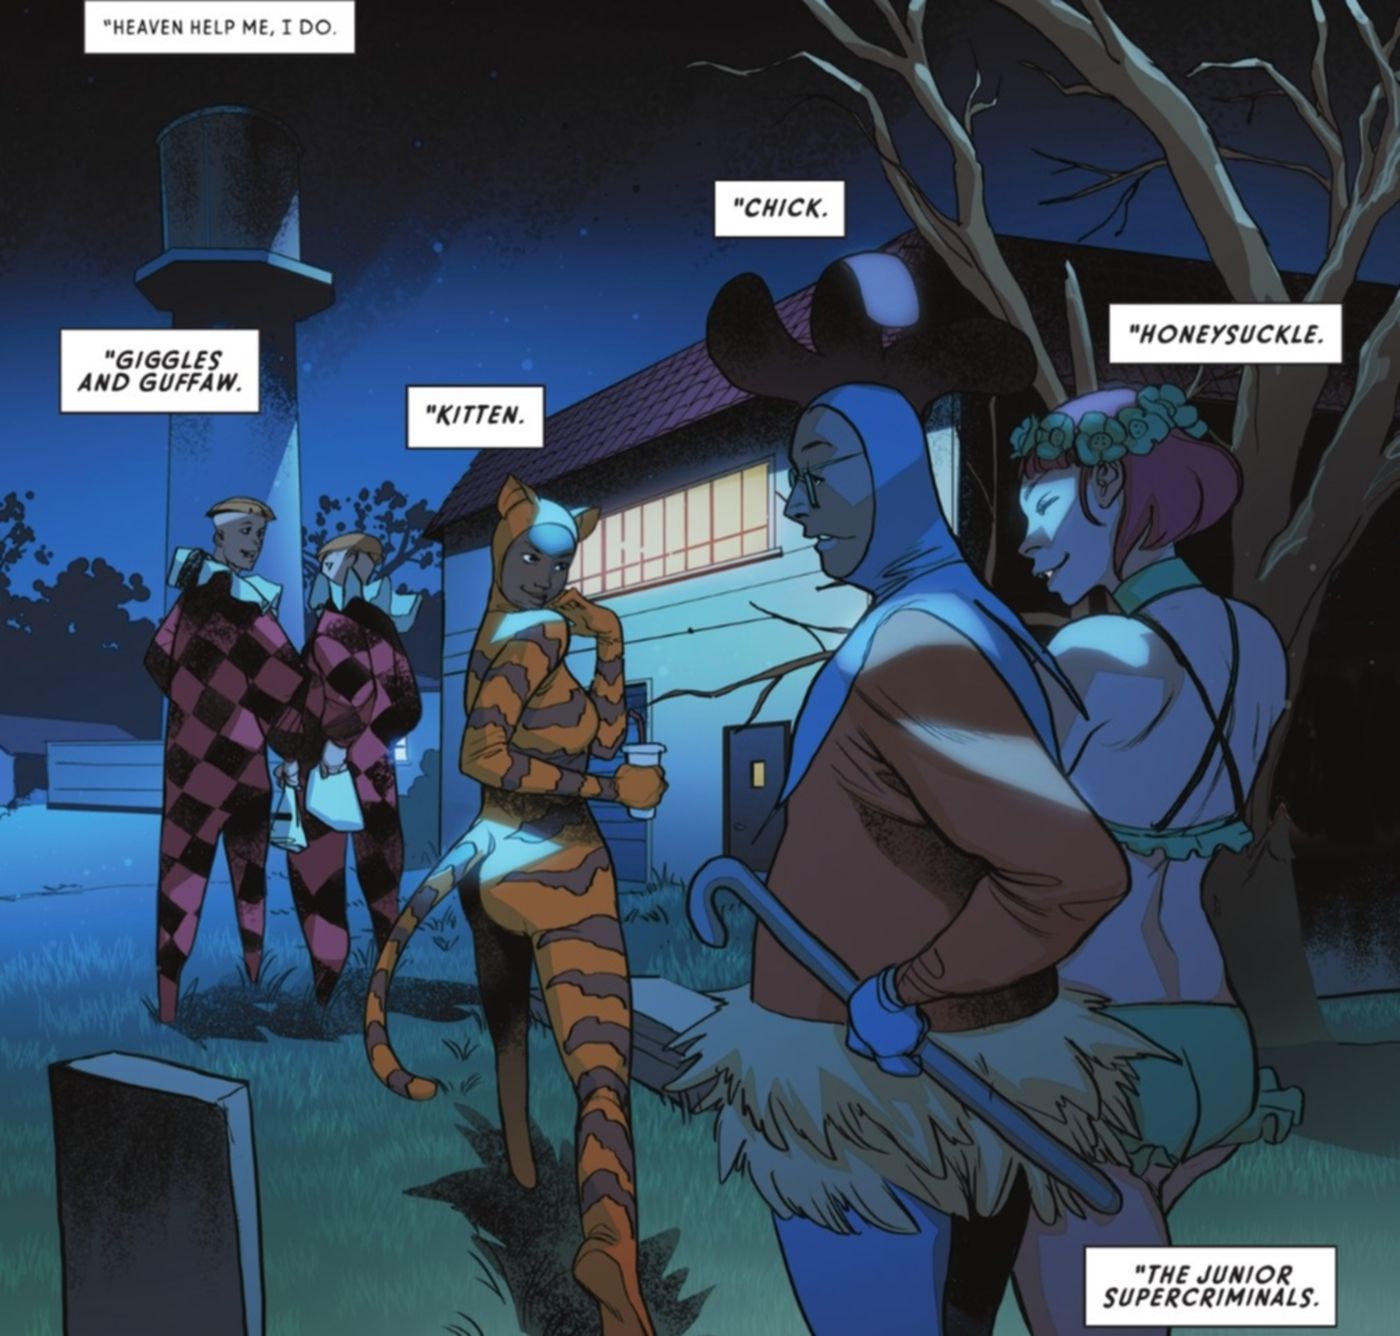 Joker, Poison Ivy, and Penguin’s Secret Sidekicks Return To DC Comics